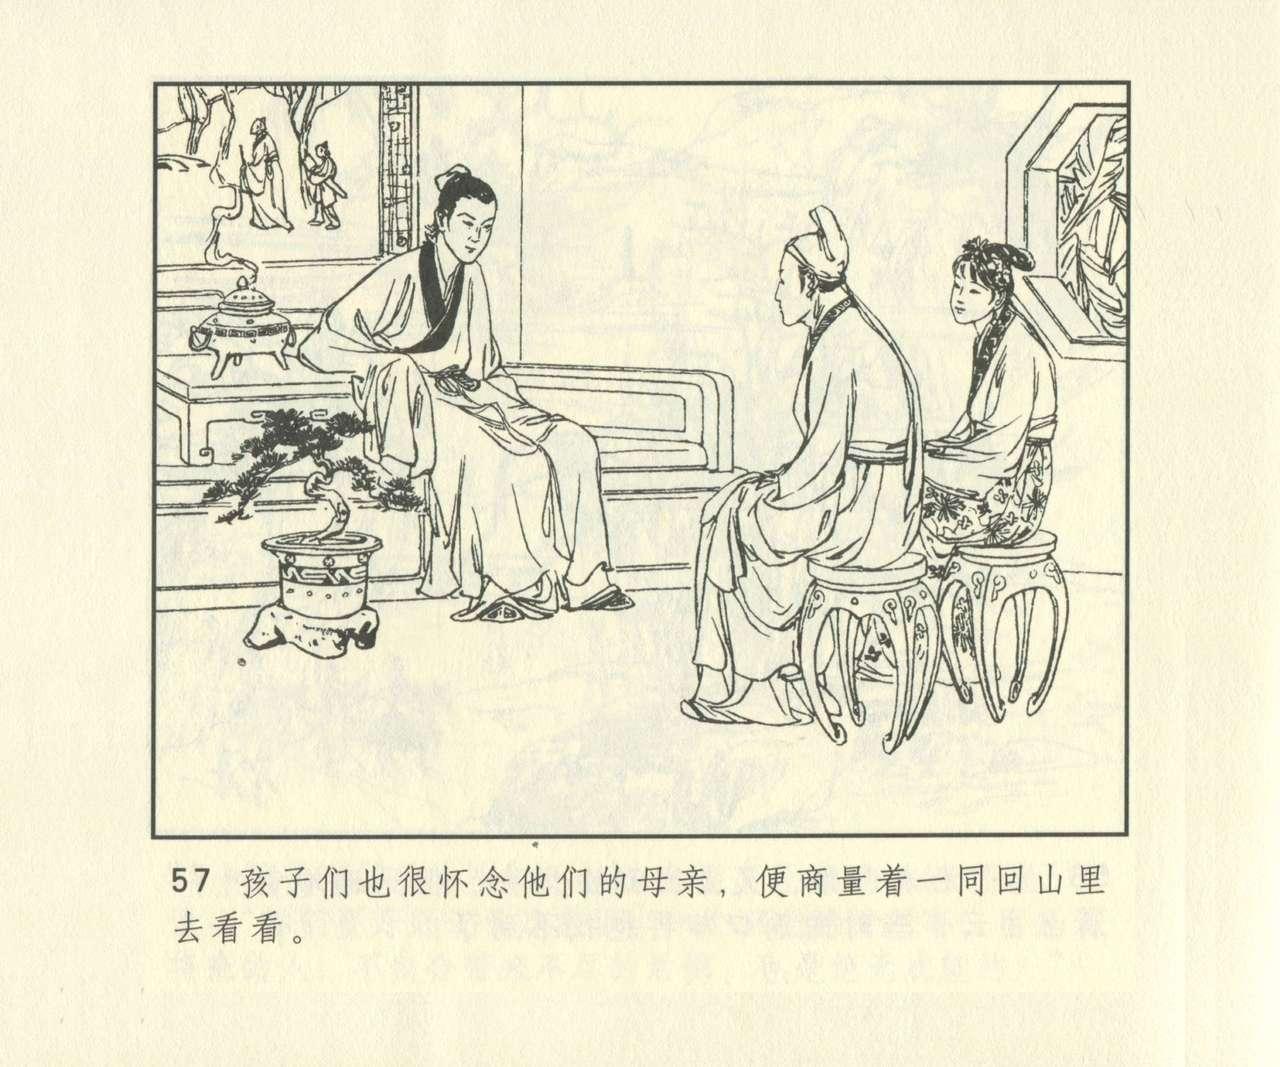 聊斋志异 张玮等绘 天津人民美术出版社 卷二十一 ~ 三十 673